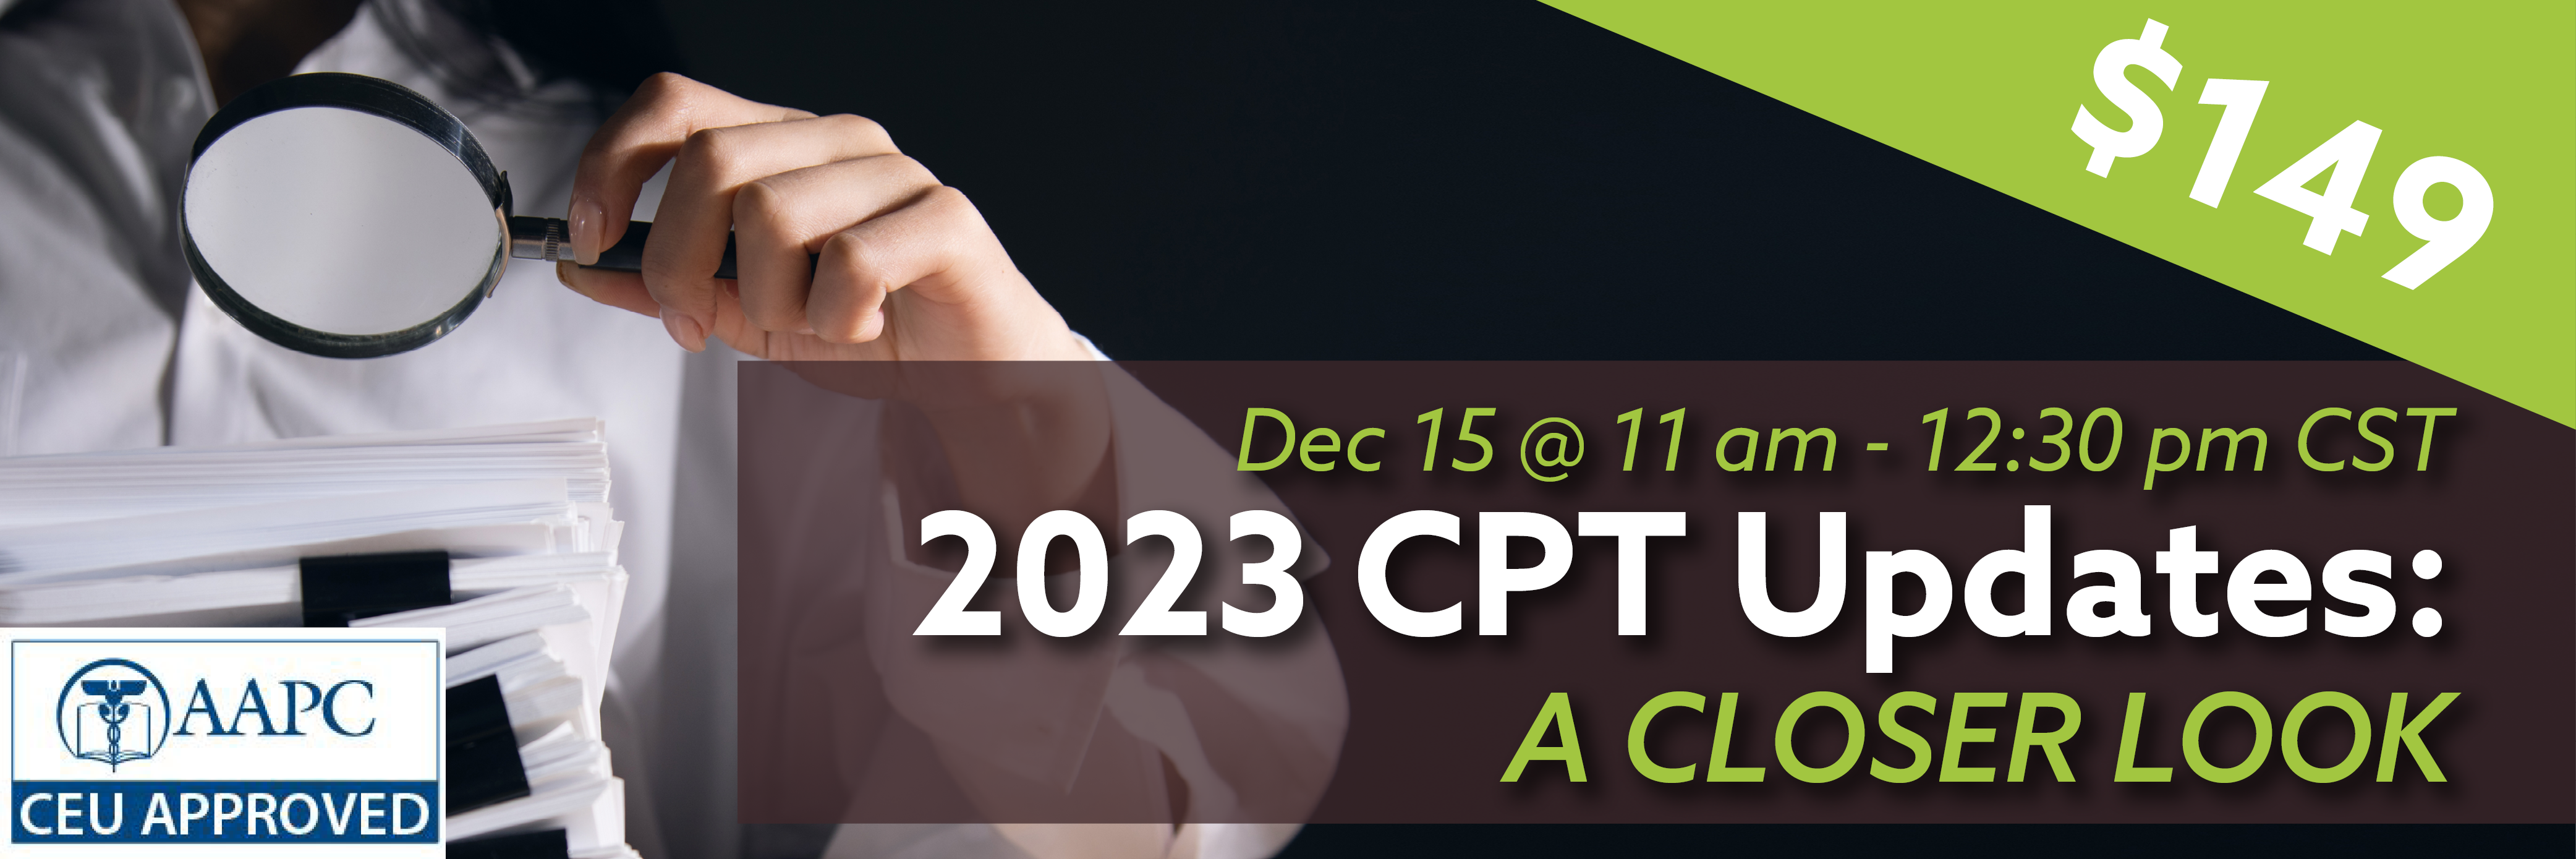 Dec 15 @ 11 am - 12:30 pm CST, 2023 CPT Updates: A Closer Look